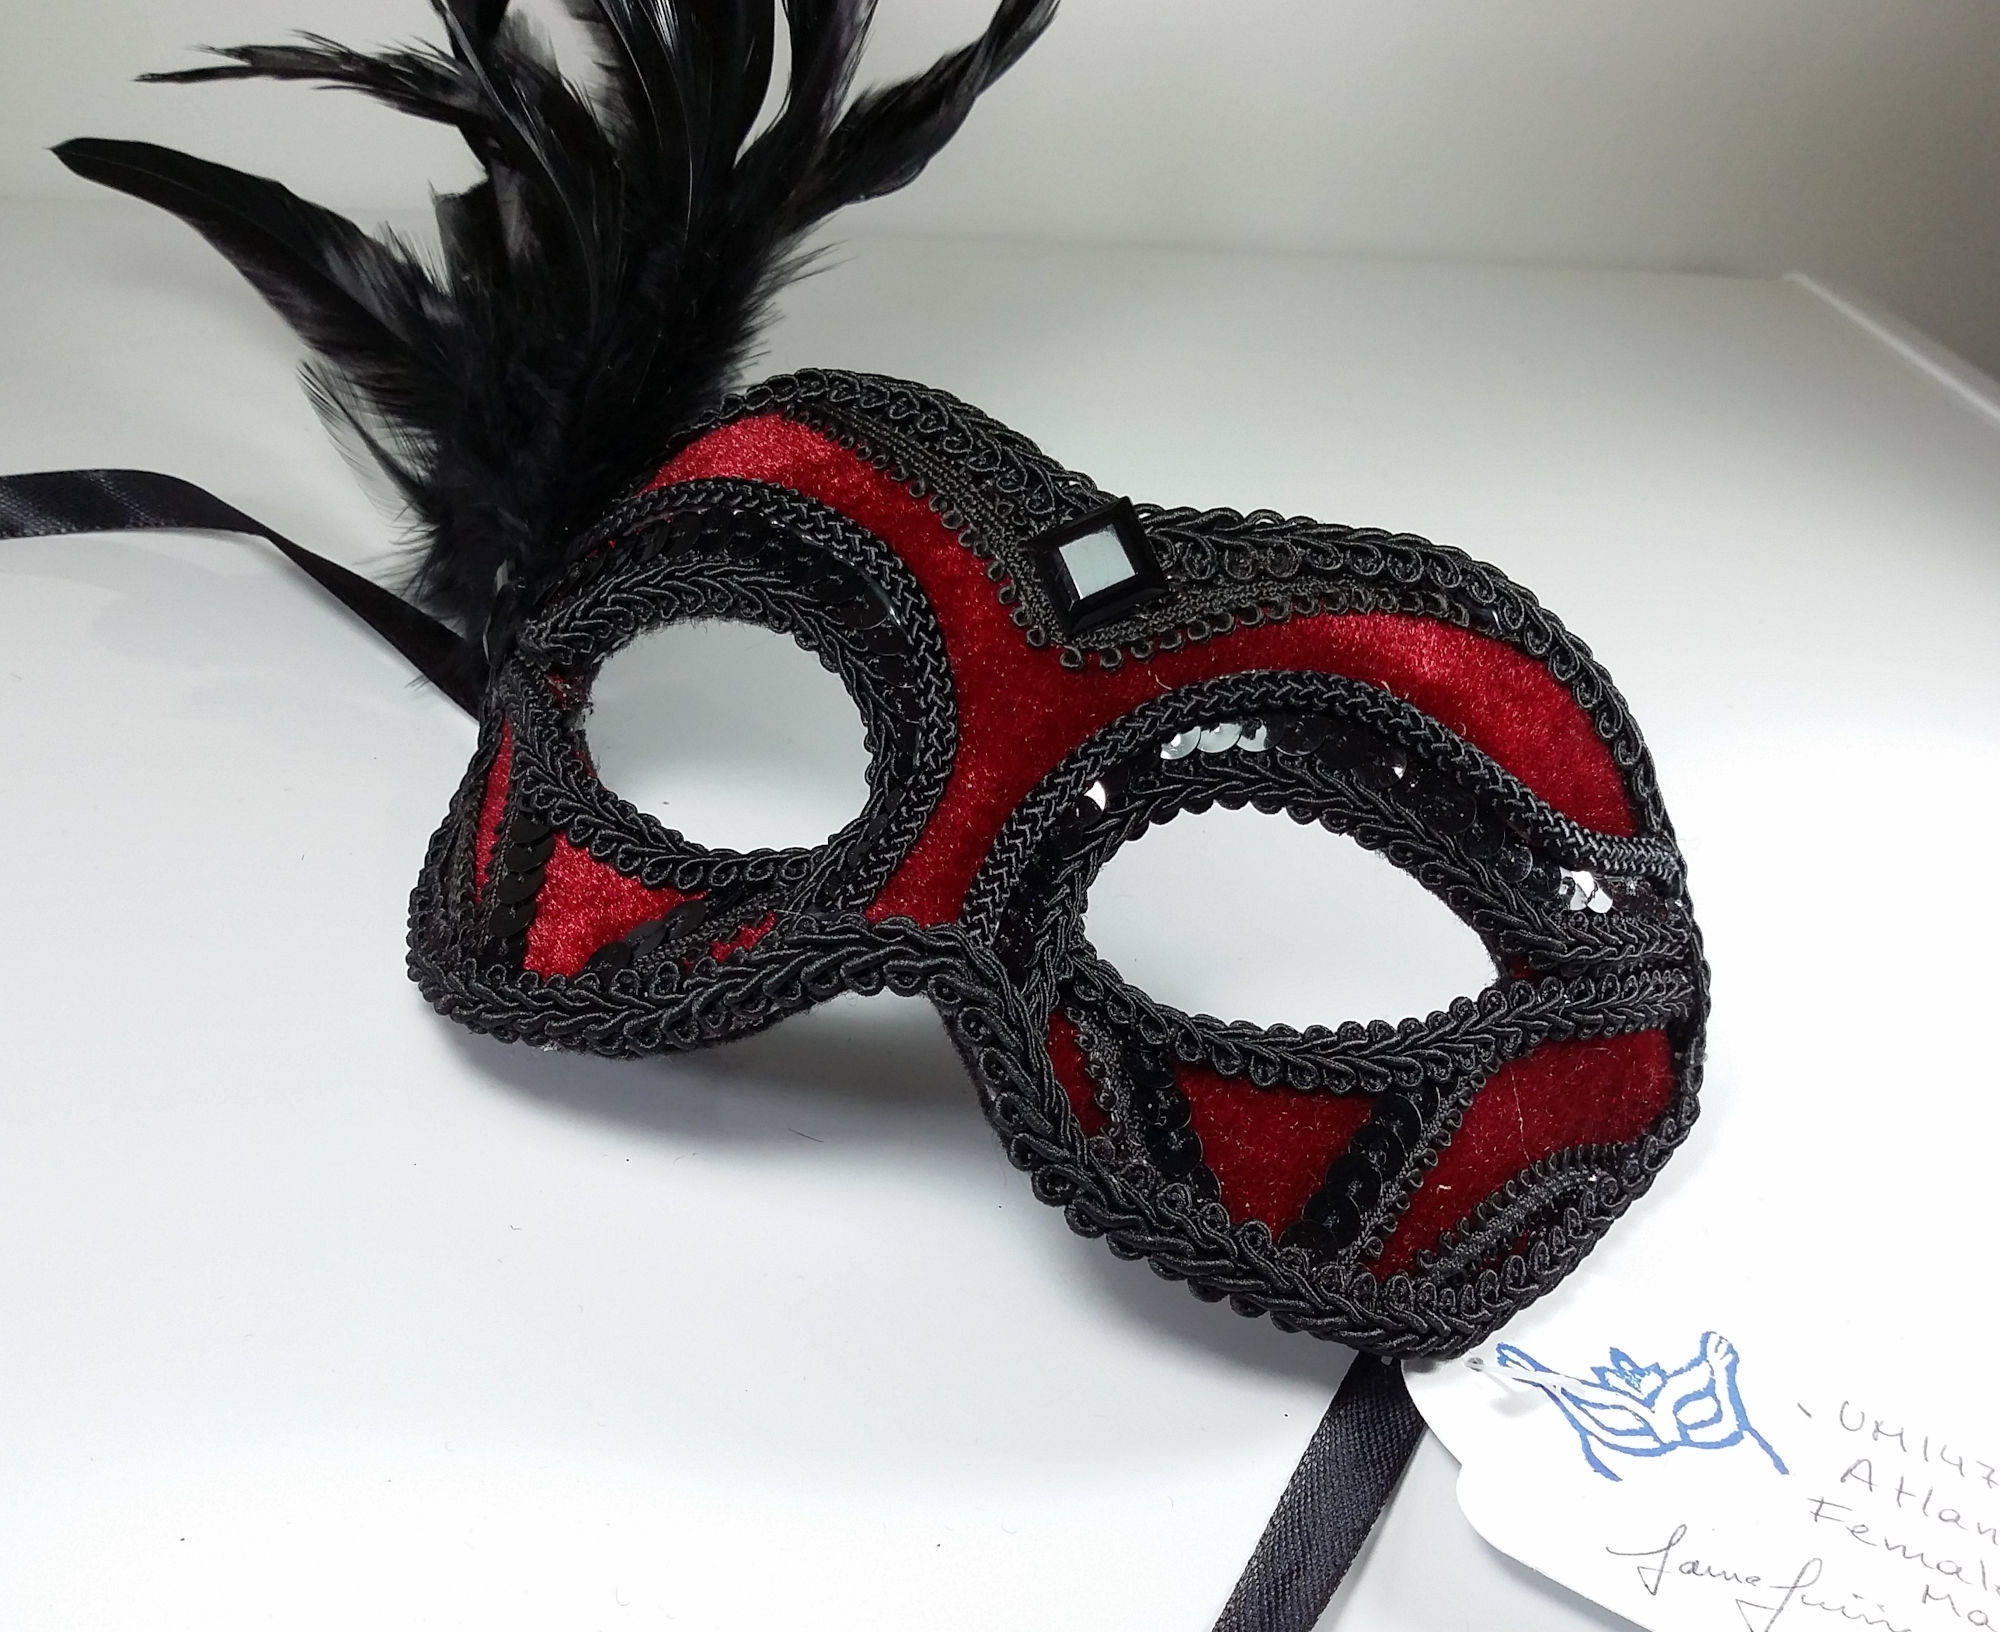 (image for) Atlantis Deep Red & Black Women's Mask - Costume Eyemask UM147F